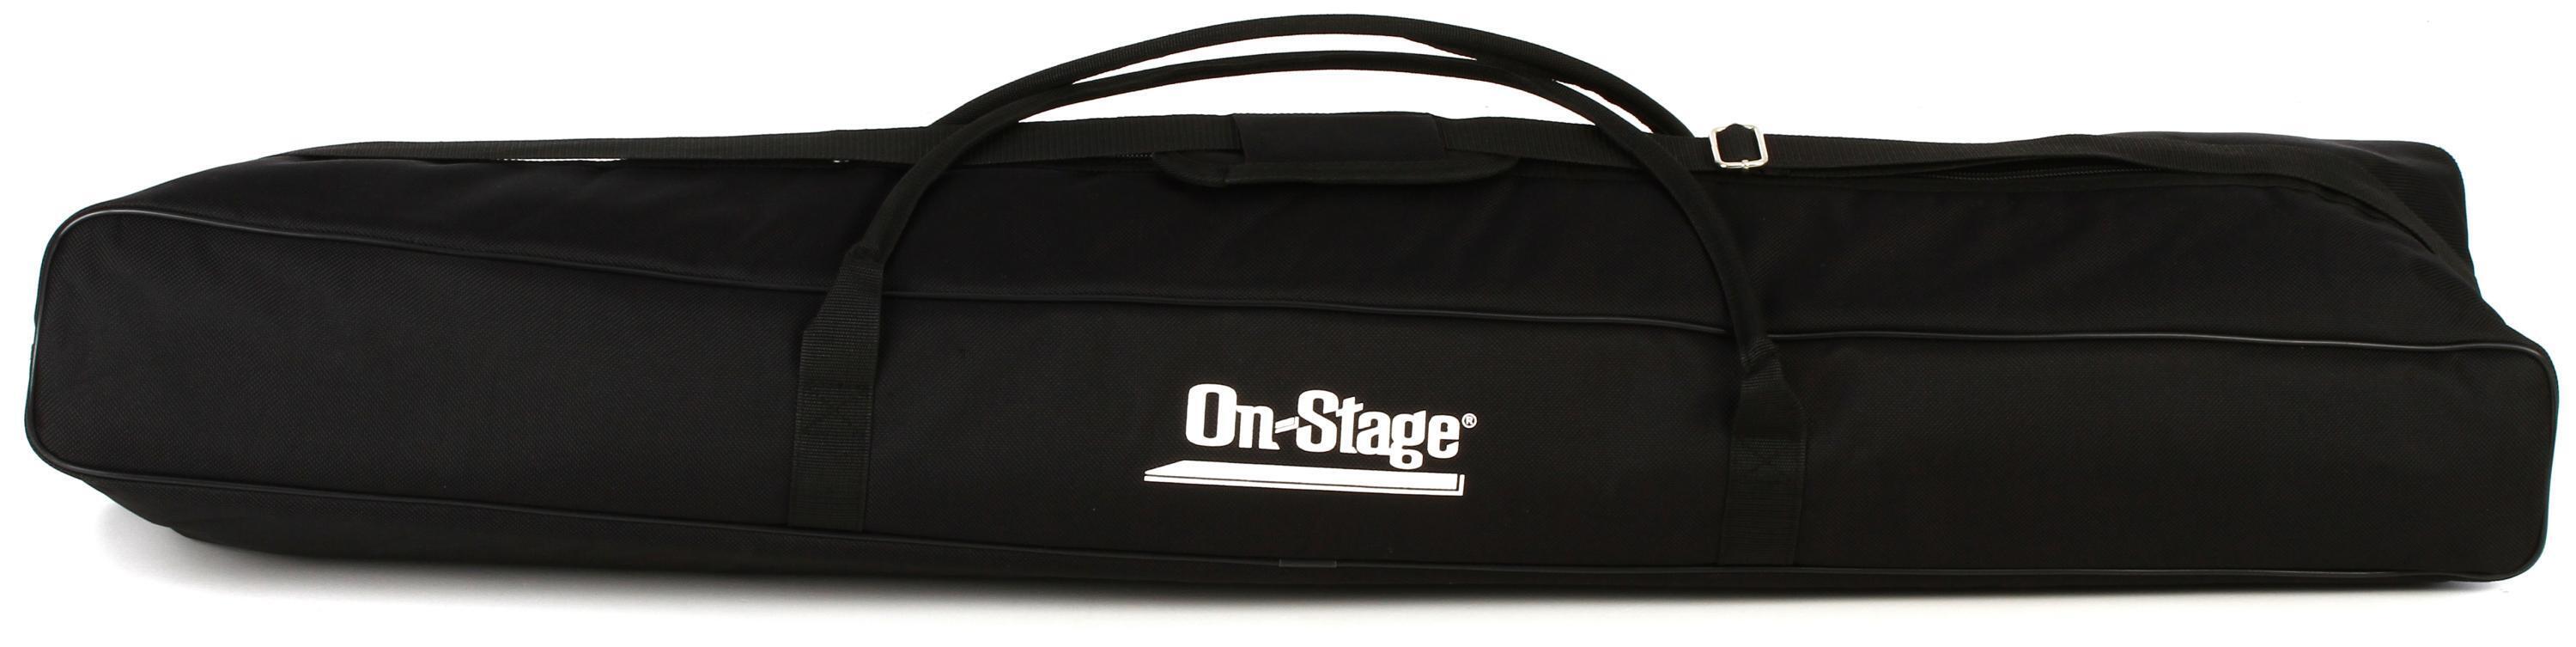 Bundled Item: On-Stage SSB6500 Bag for 2 Speaker Stands or 6 Mic Stands